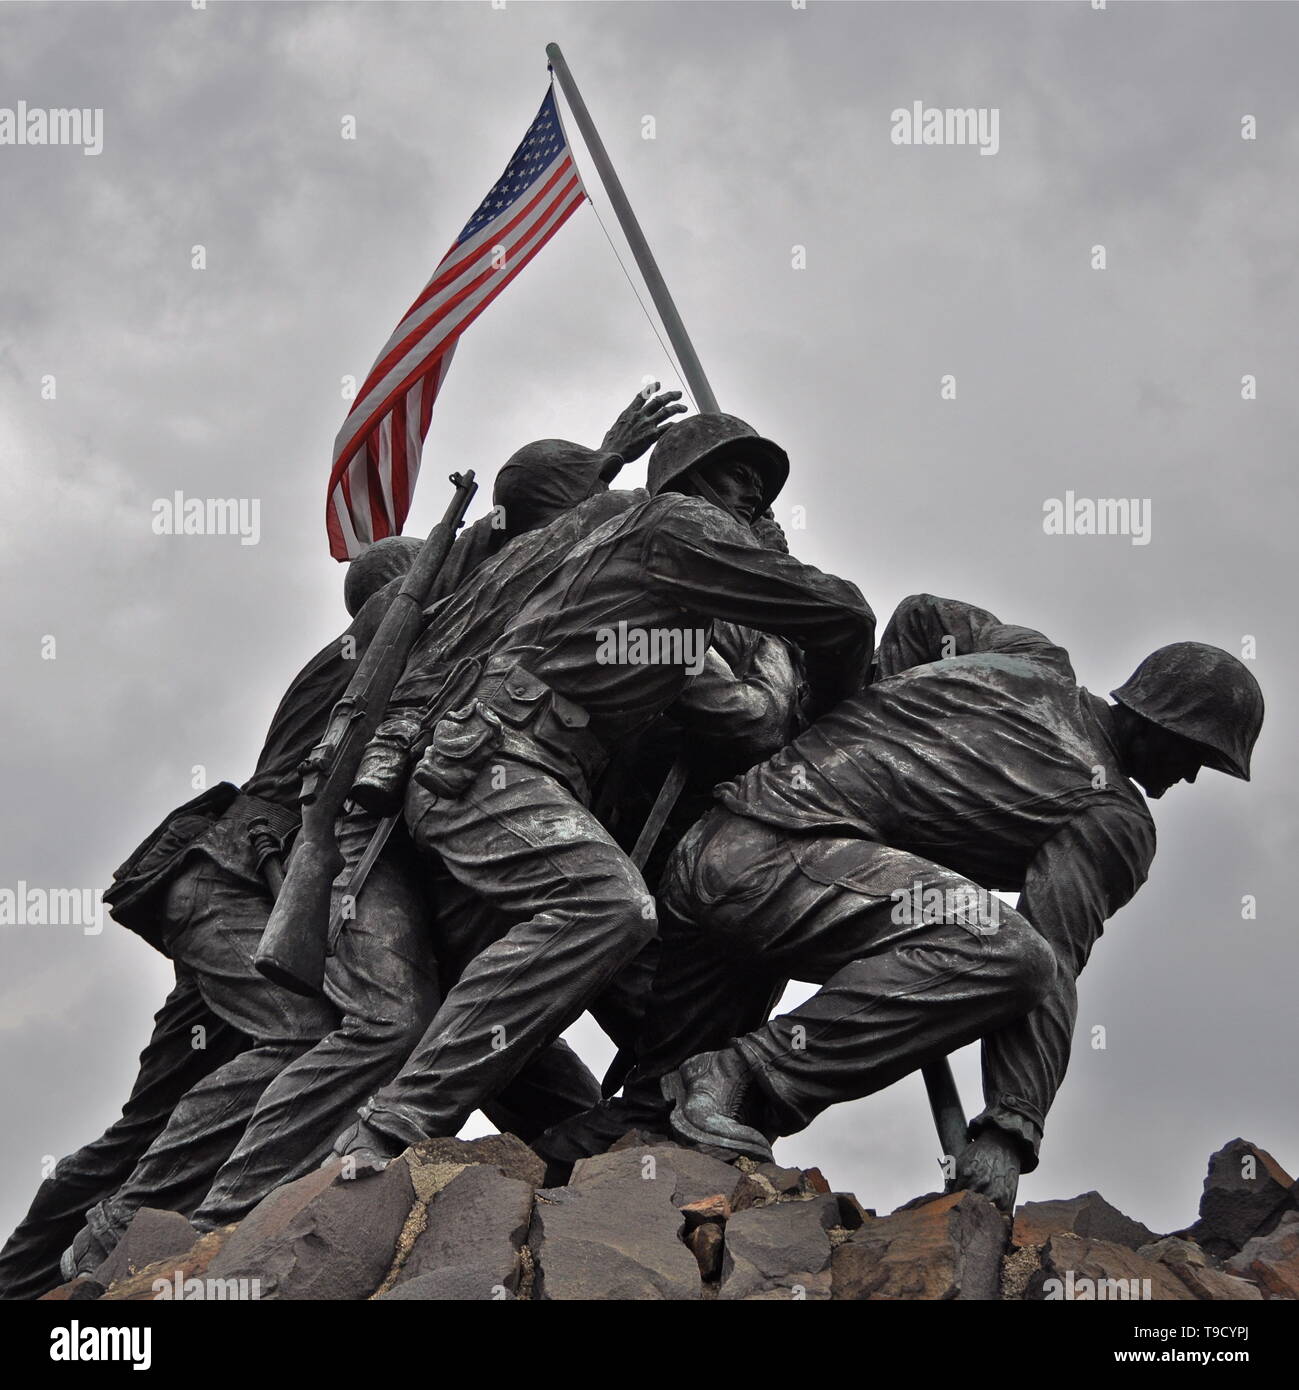 Le U.S. Marine Corps War Memorial, qui décrit la montée du drapeau américain au cours de la bataille d'Iwo Jima DURANT LA SECONDE GUERRE MONDIALE. Banque D'Images